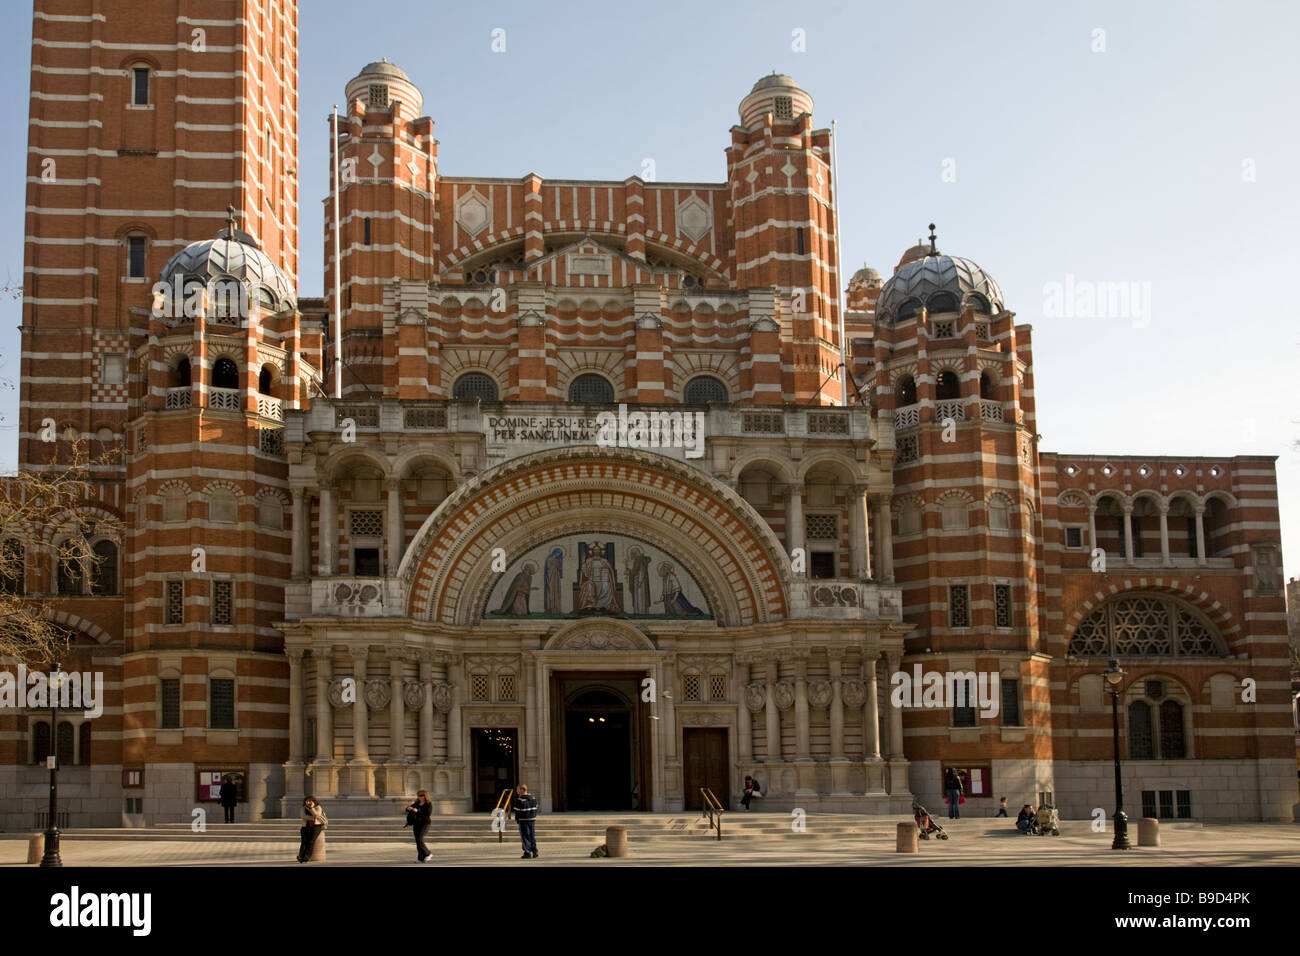 La Cathédrale de Westminster Londres Angleterre Banque D'Images